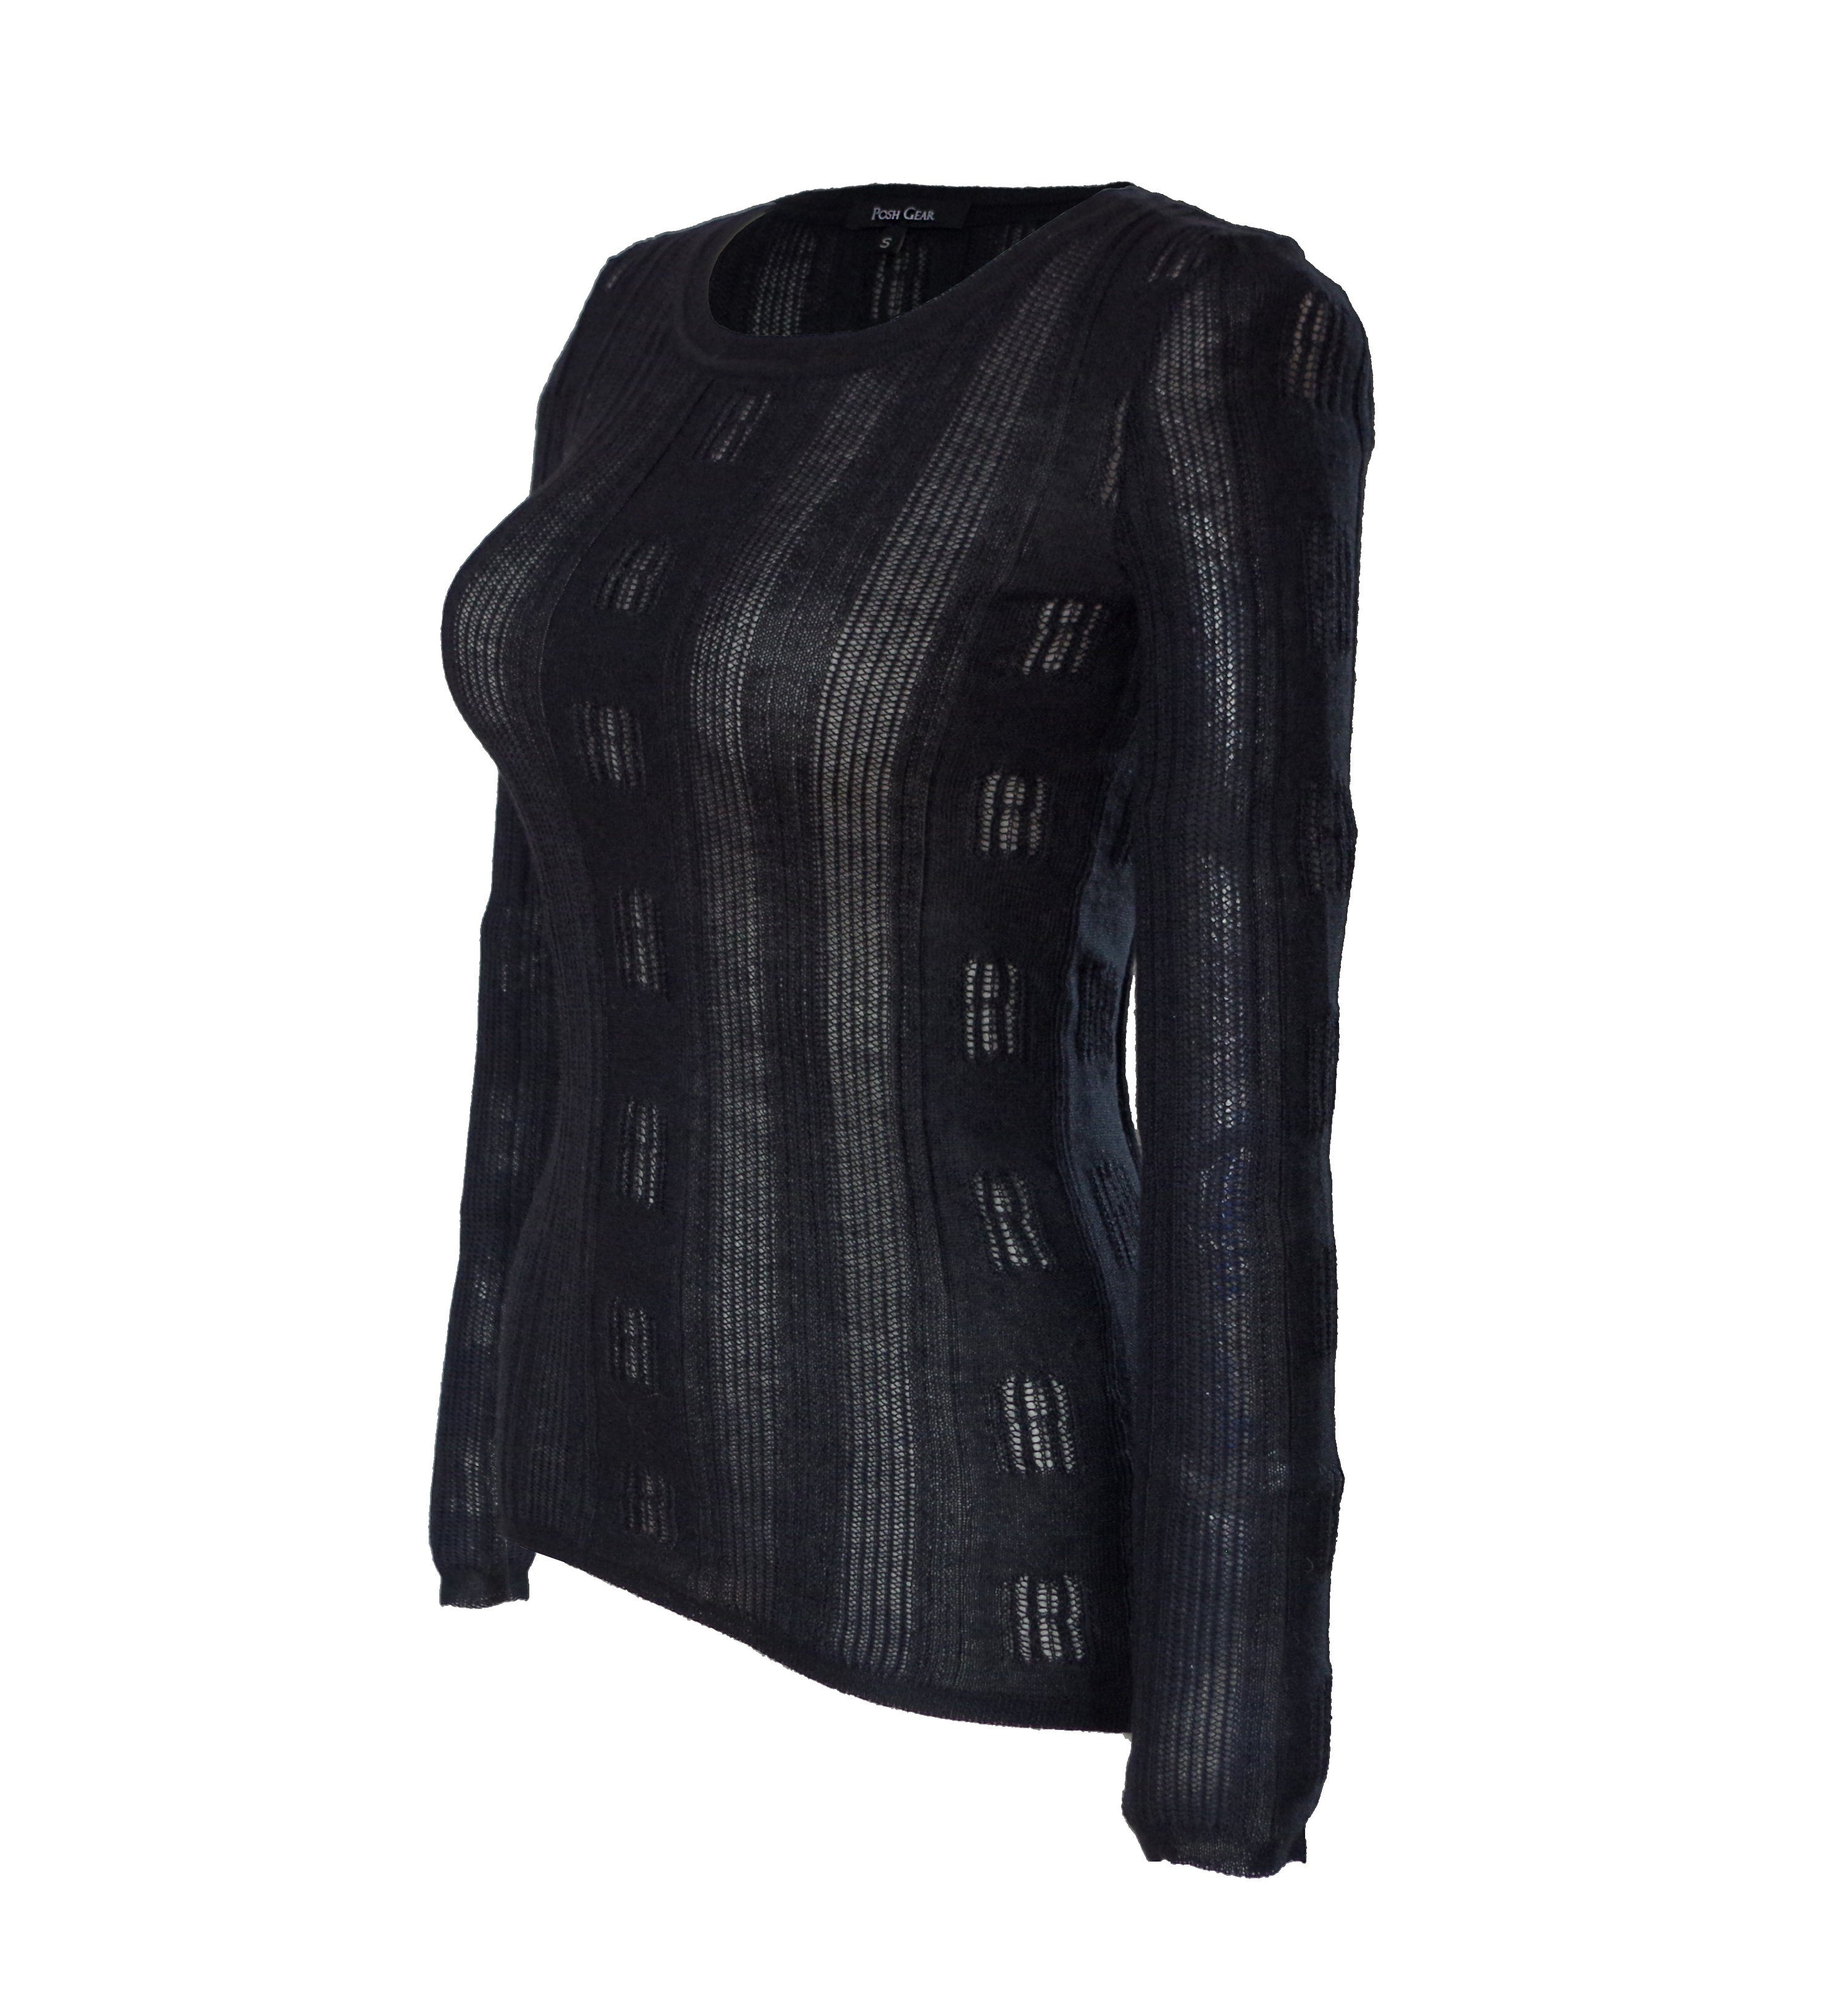 Damen Lamawolle schwarz aus Wollpullover Rundkragen Posh Pullover 100% Breezy Gear